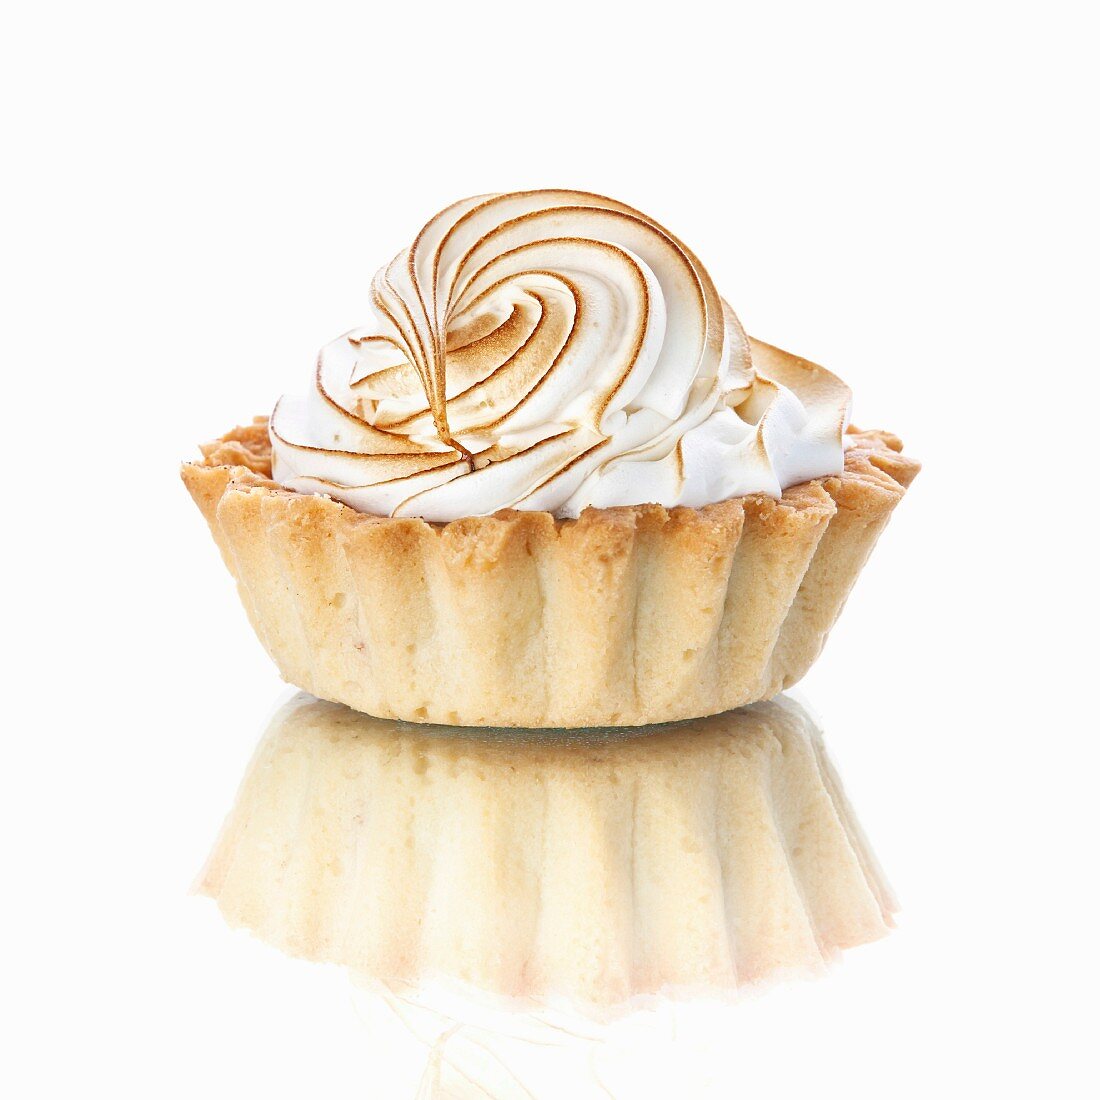 Vanilla beige Cupcake on white background